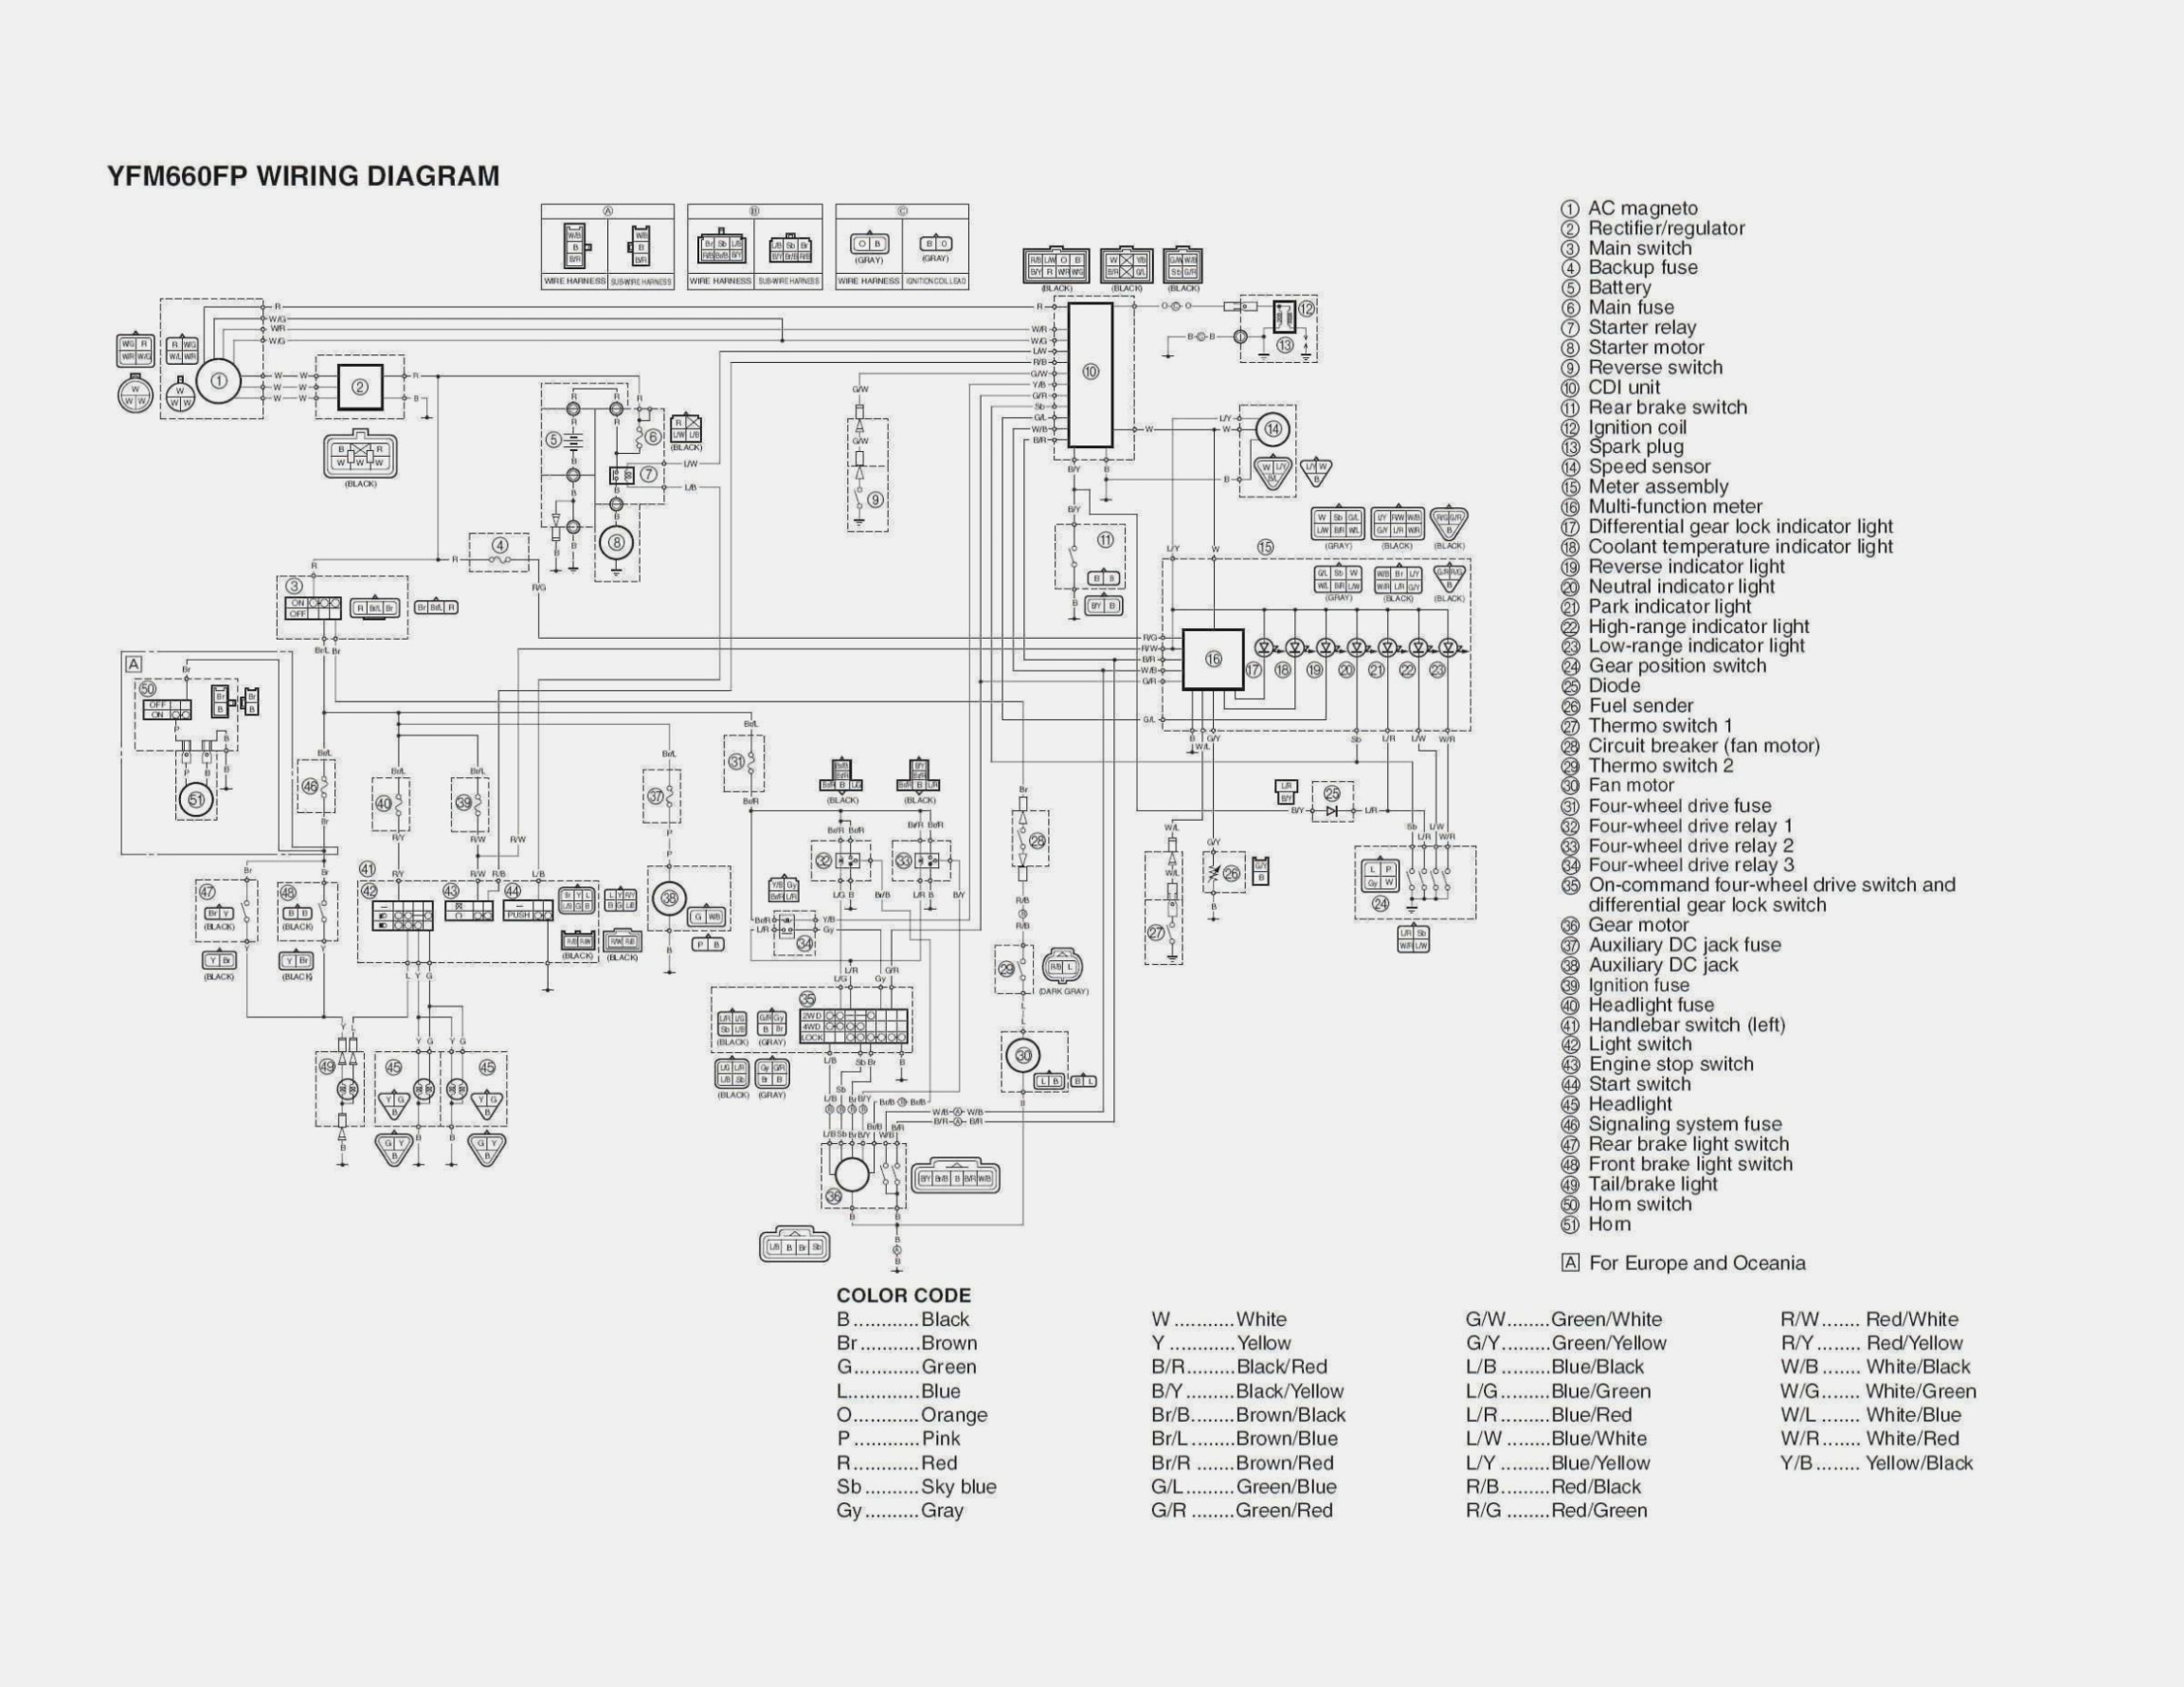 Car Parts Diagram with Names 30 Honda Xr100 Parts – Car Parts List with Of Car Parts Diagram with Names